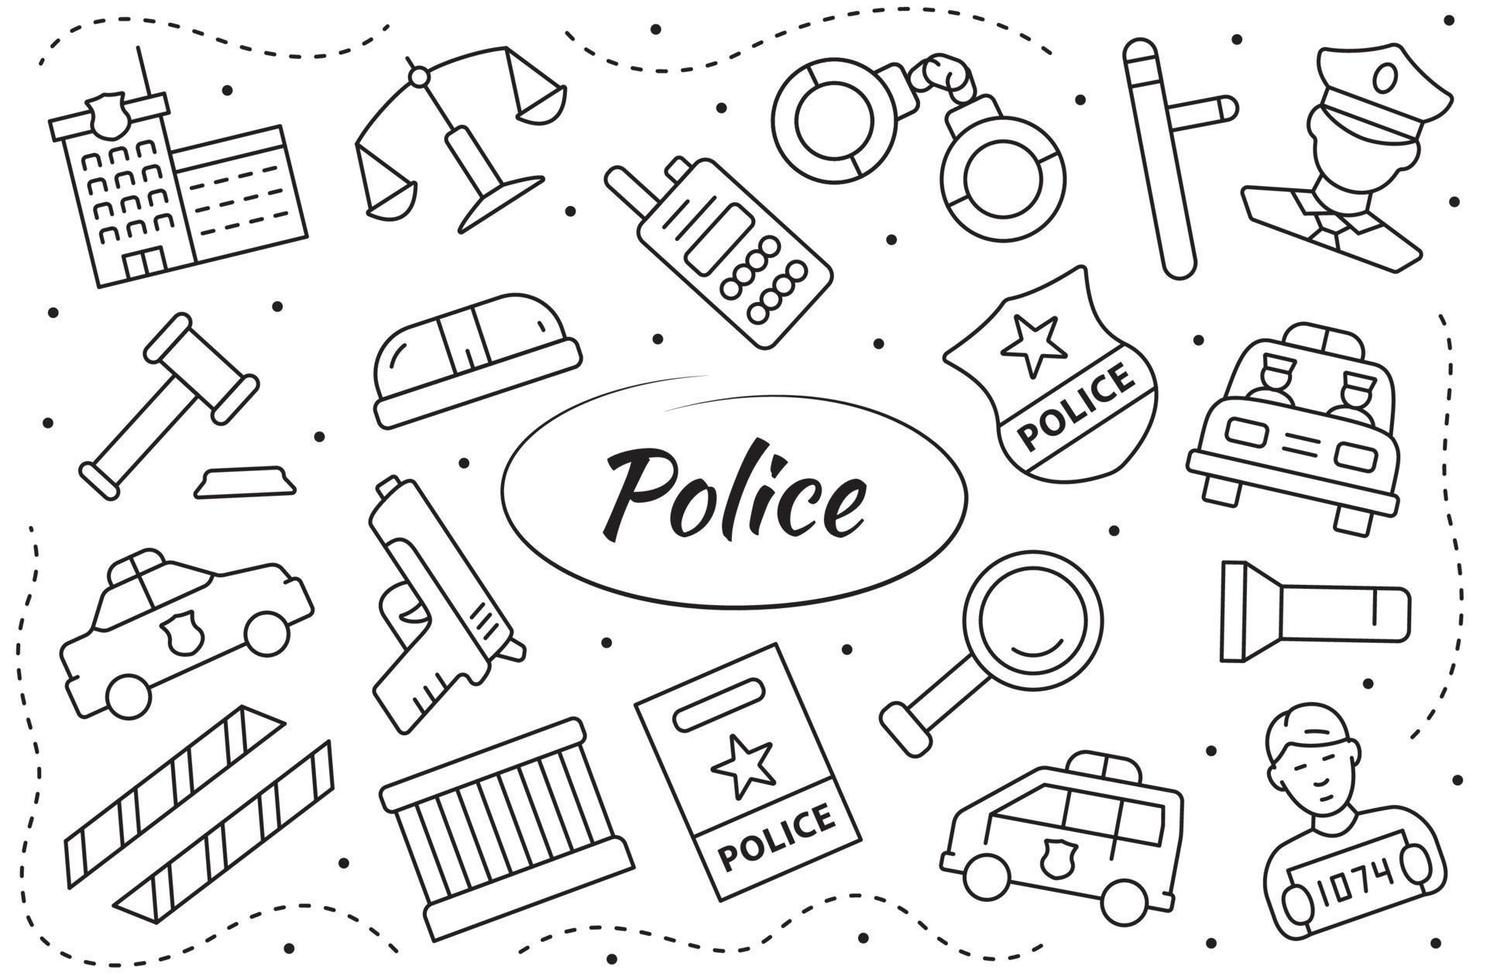 politie lineaire objecten en elementen instellen. wet en rechtvaardigheid concept. vectorillustratie. vector